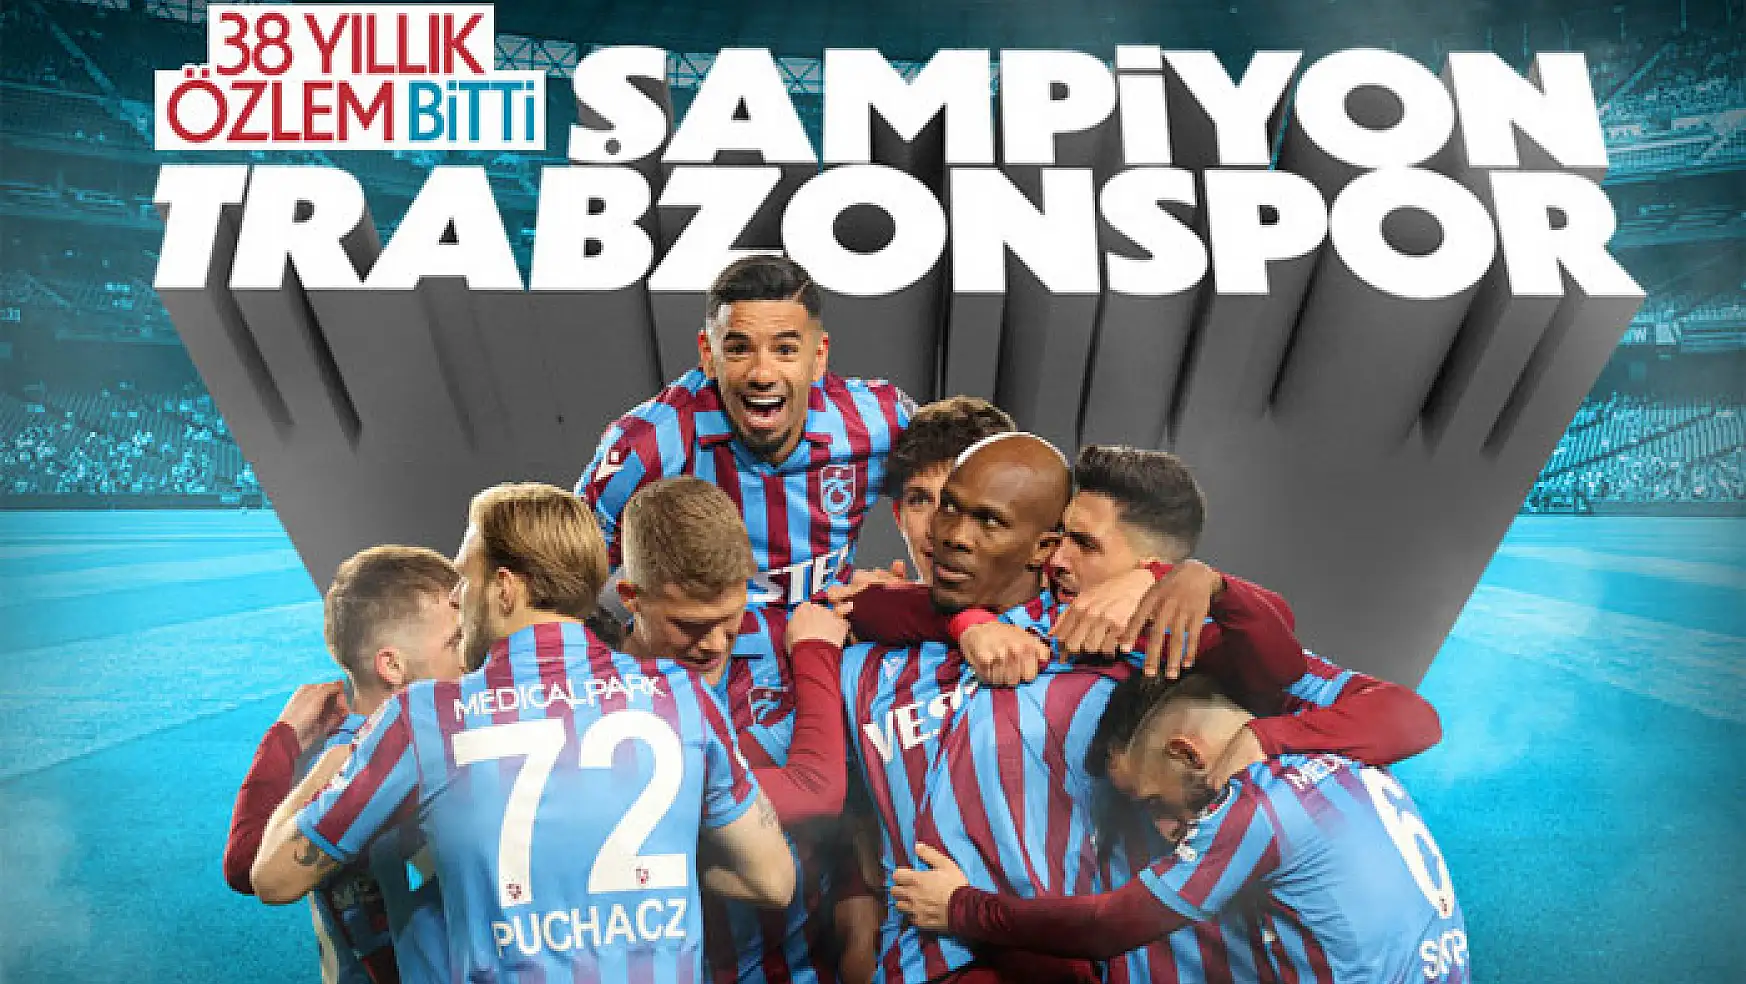 Trabzonspor Şampiyon! 38 yıllık hasret sona erdi